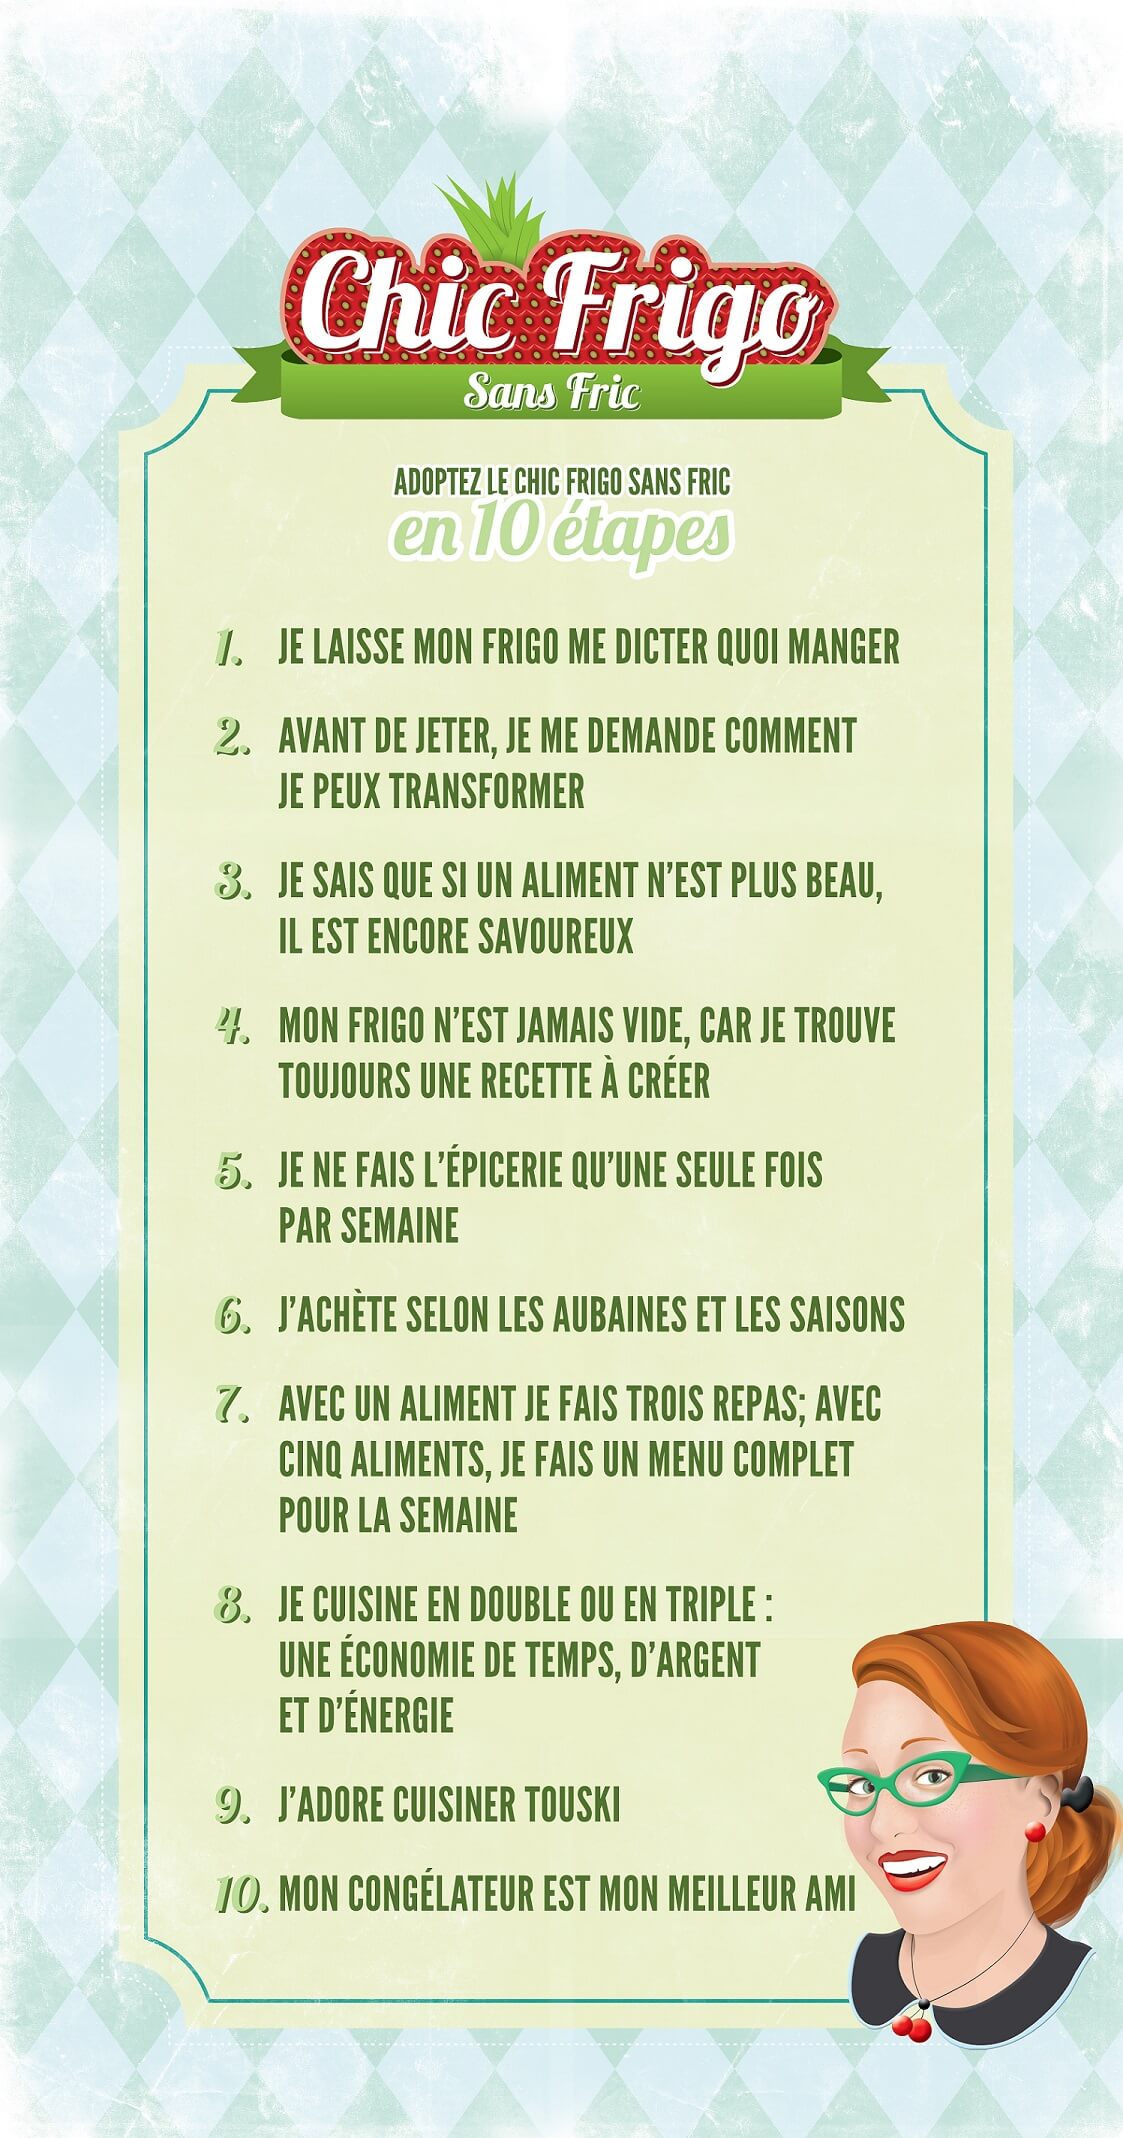 Les 10 commandements du Chic Frigo Sans Fric